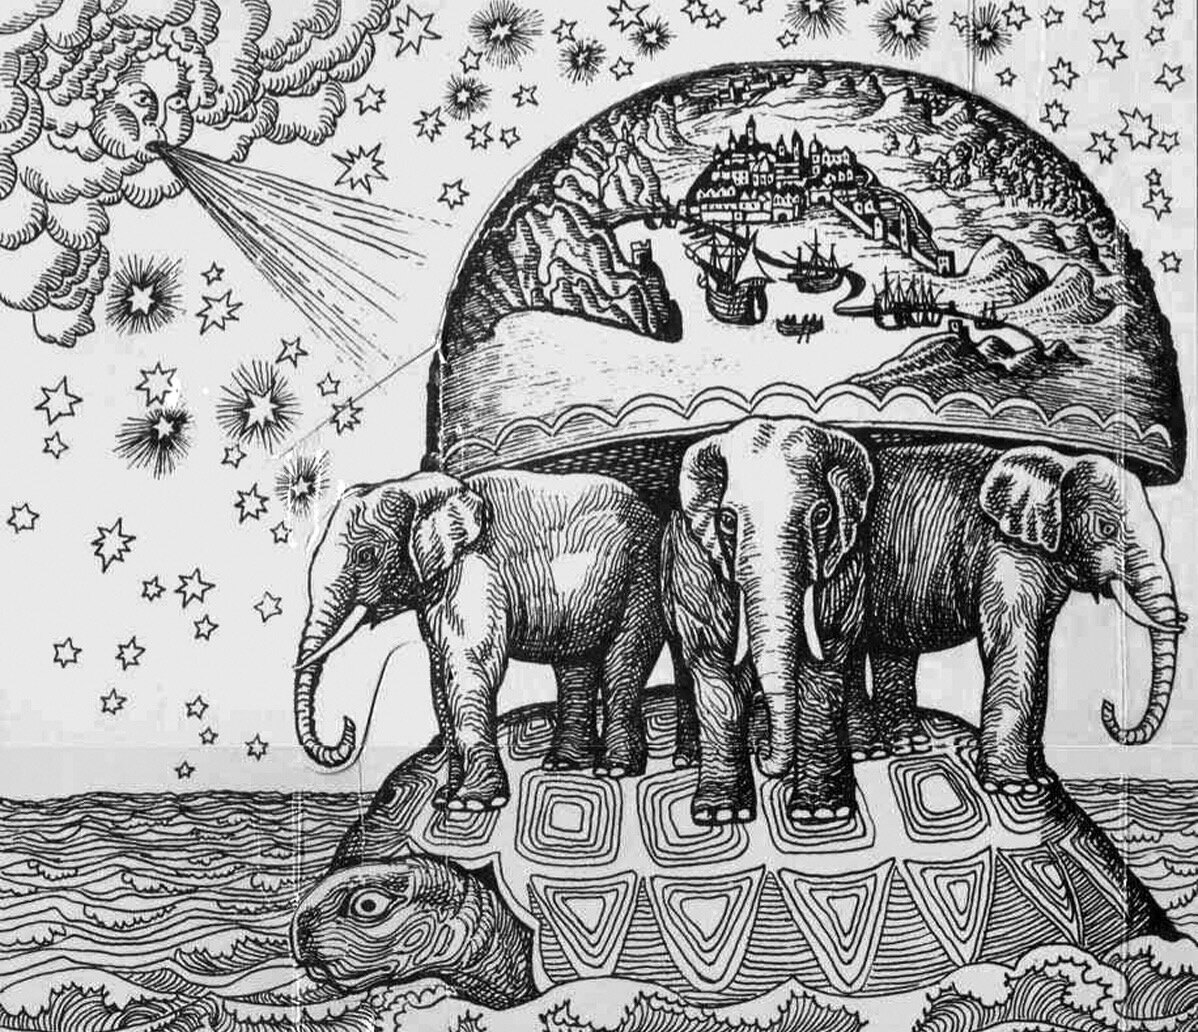 Познание животных. Черепаха три слона плоская земля. Плоская земля на трех слонах и черепахе. Древние представления о земле на трех китах. Плоская 9пмля Ири слонв.